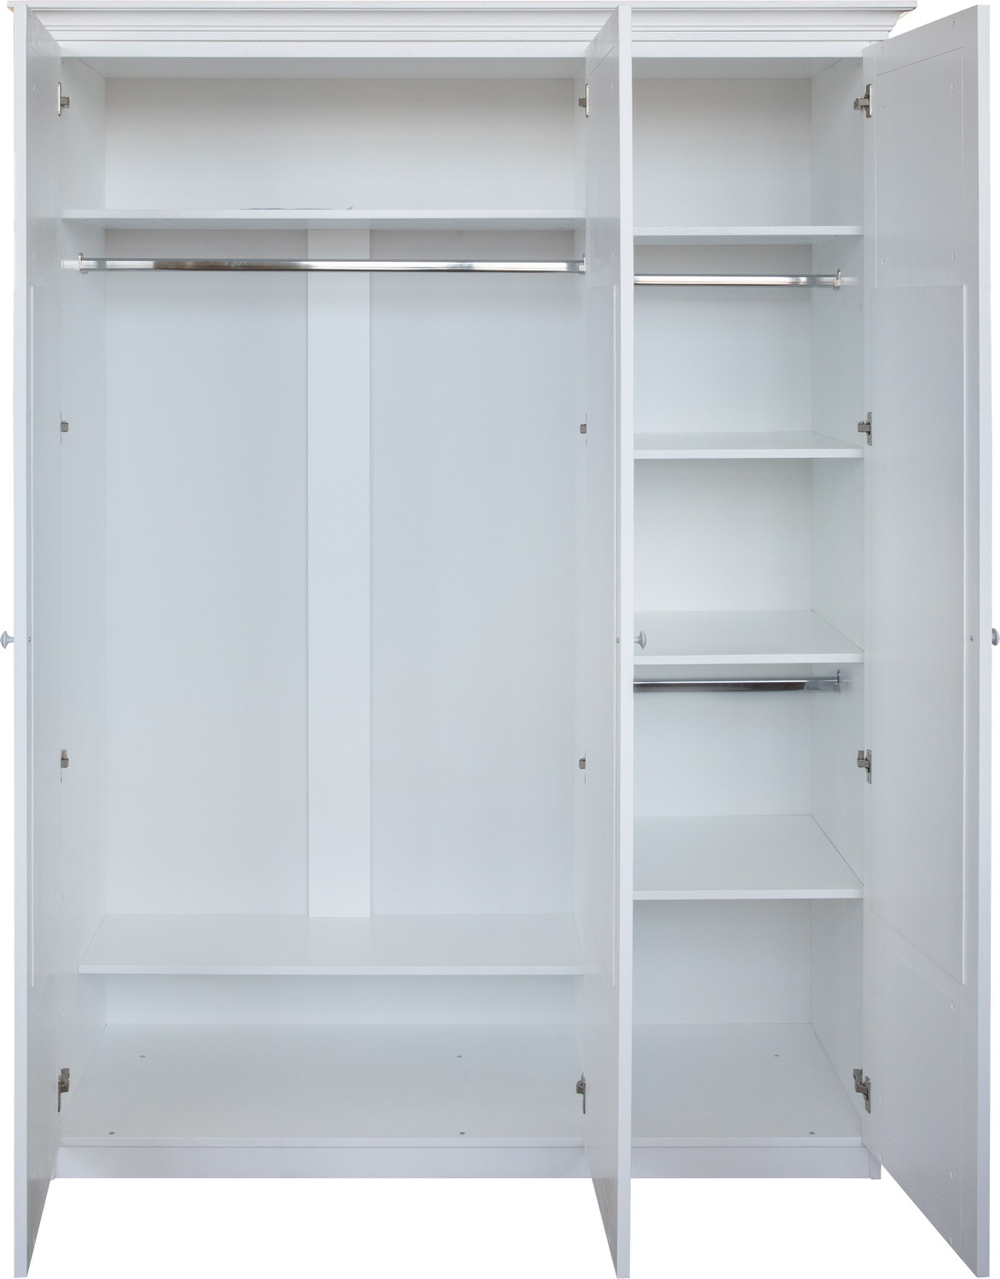 Шкаф для одежды 3д «Кармен» П3.581.1.02